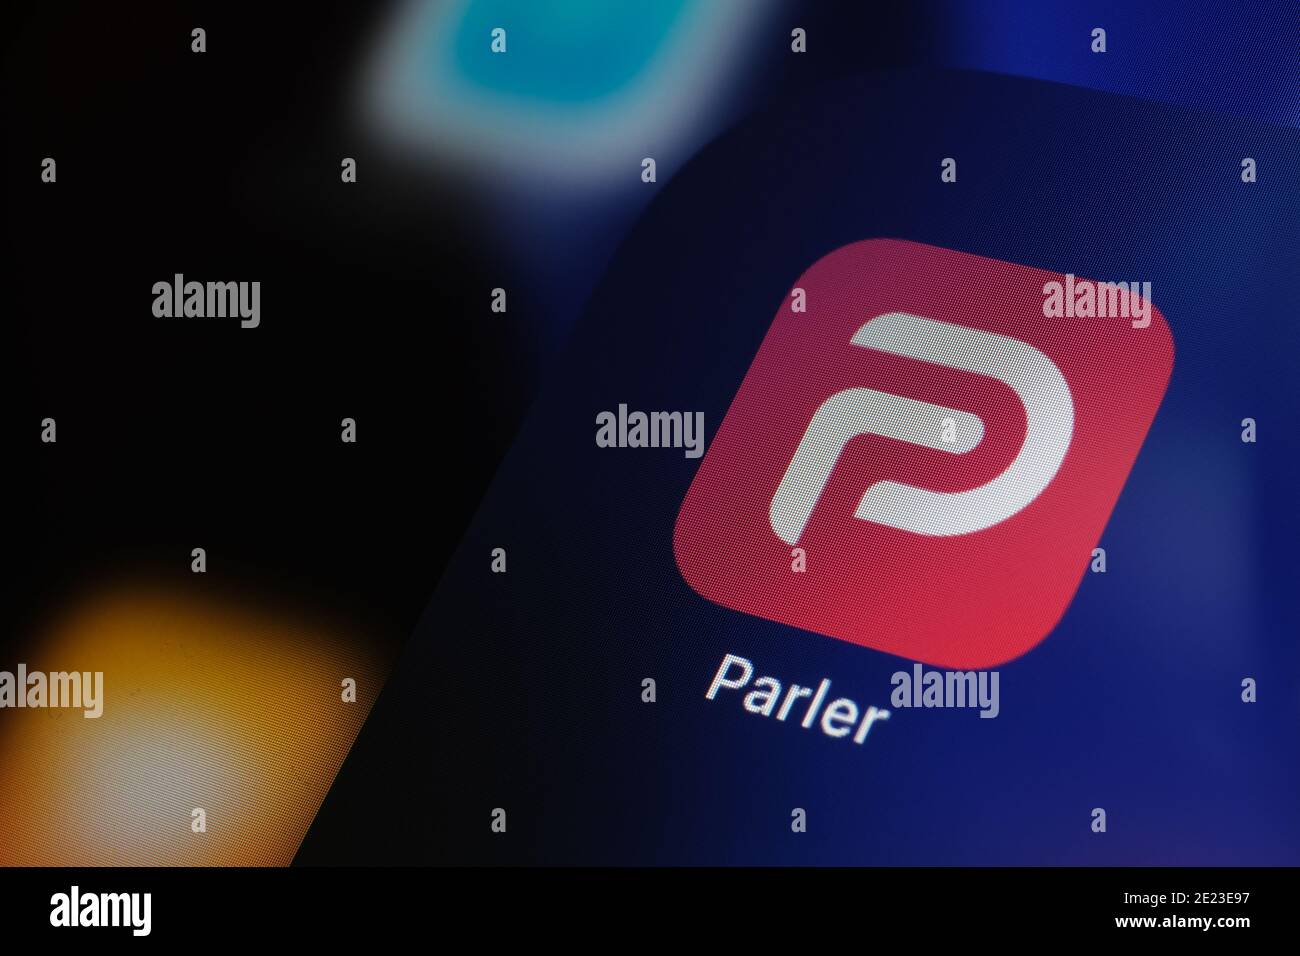 Logo de l'application Parler visible sur l'écran de l'iPad. Parler est une plateforme de médias sociaux interdite aux États-Unis. Banque D'Images